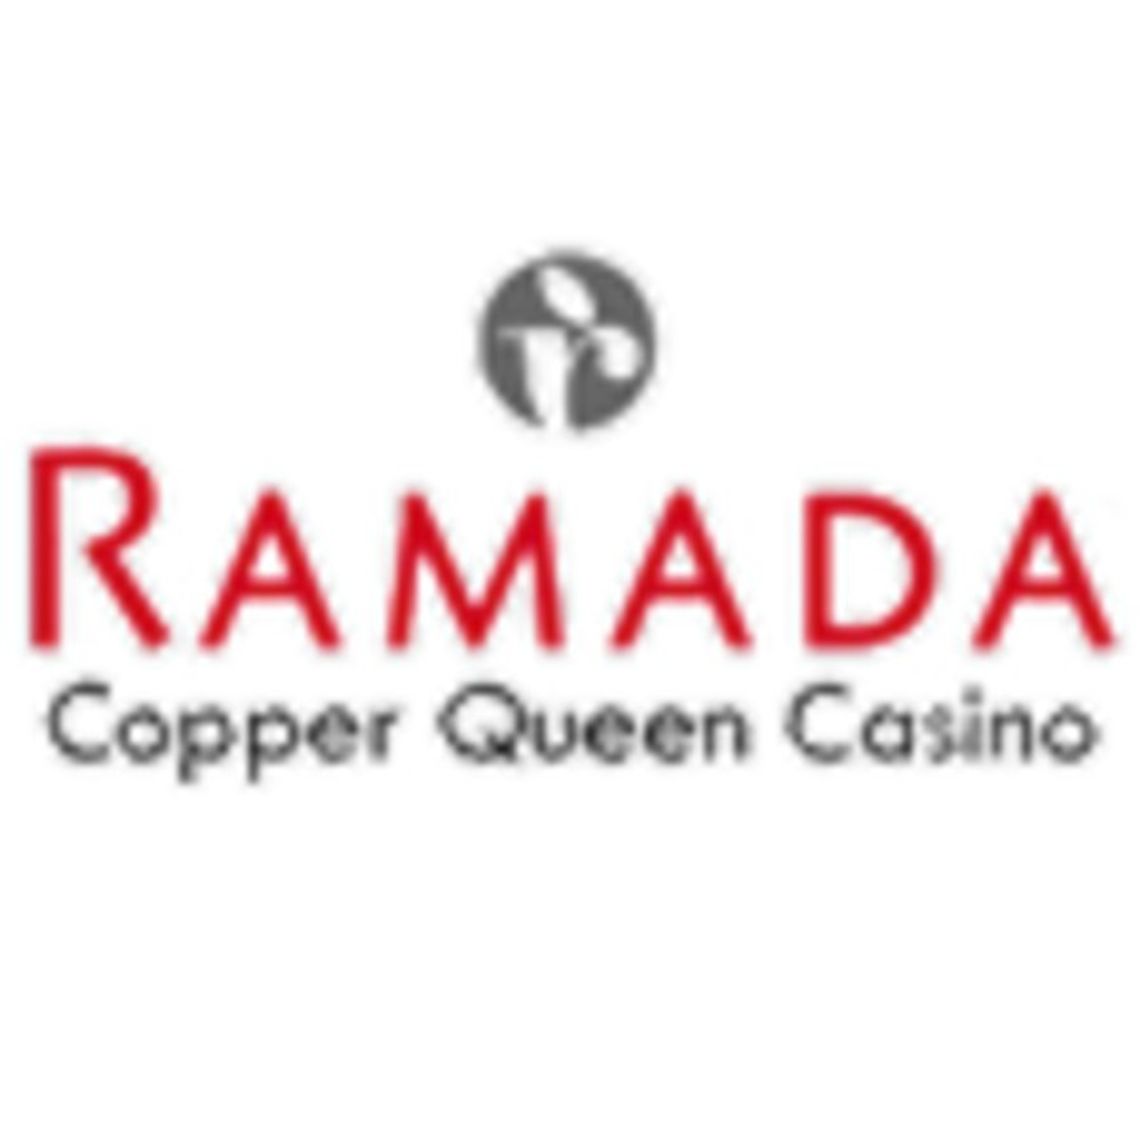 Ramada Inn/Copper Queen